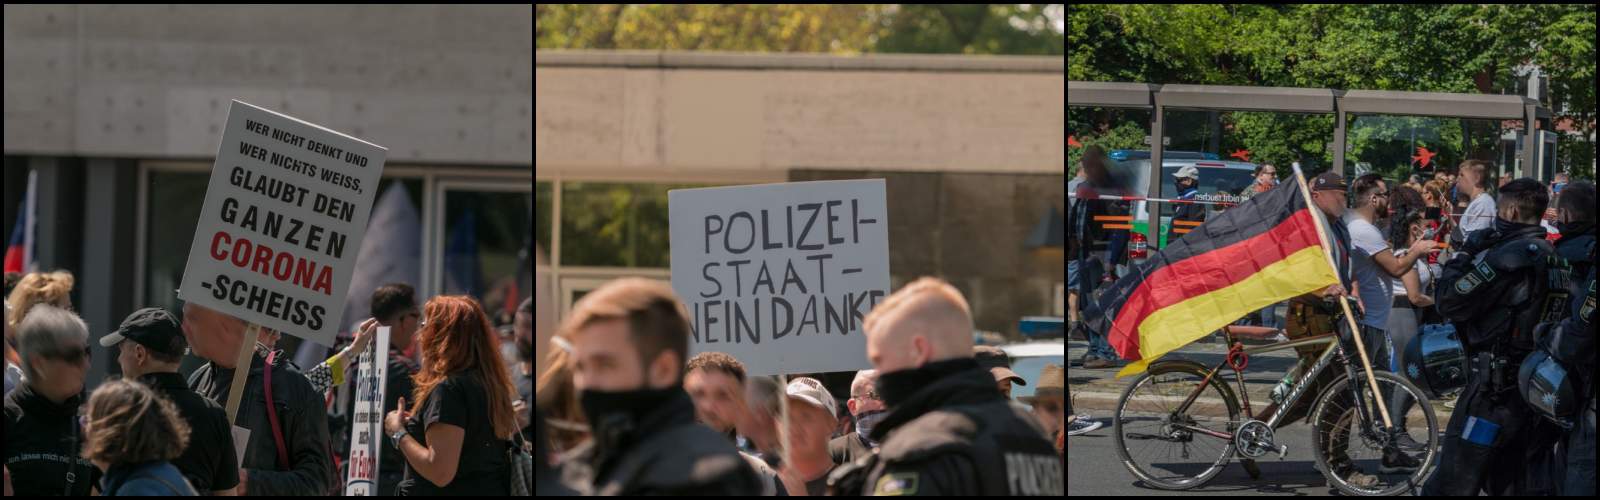 Anti-Corona-Demonstration in Nürnberg Meistersingerhalle